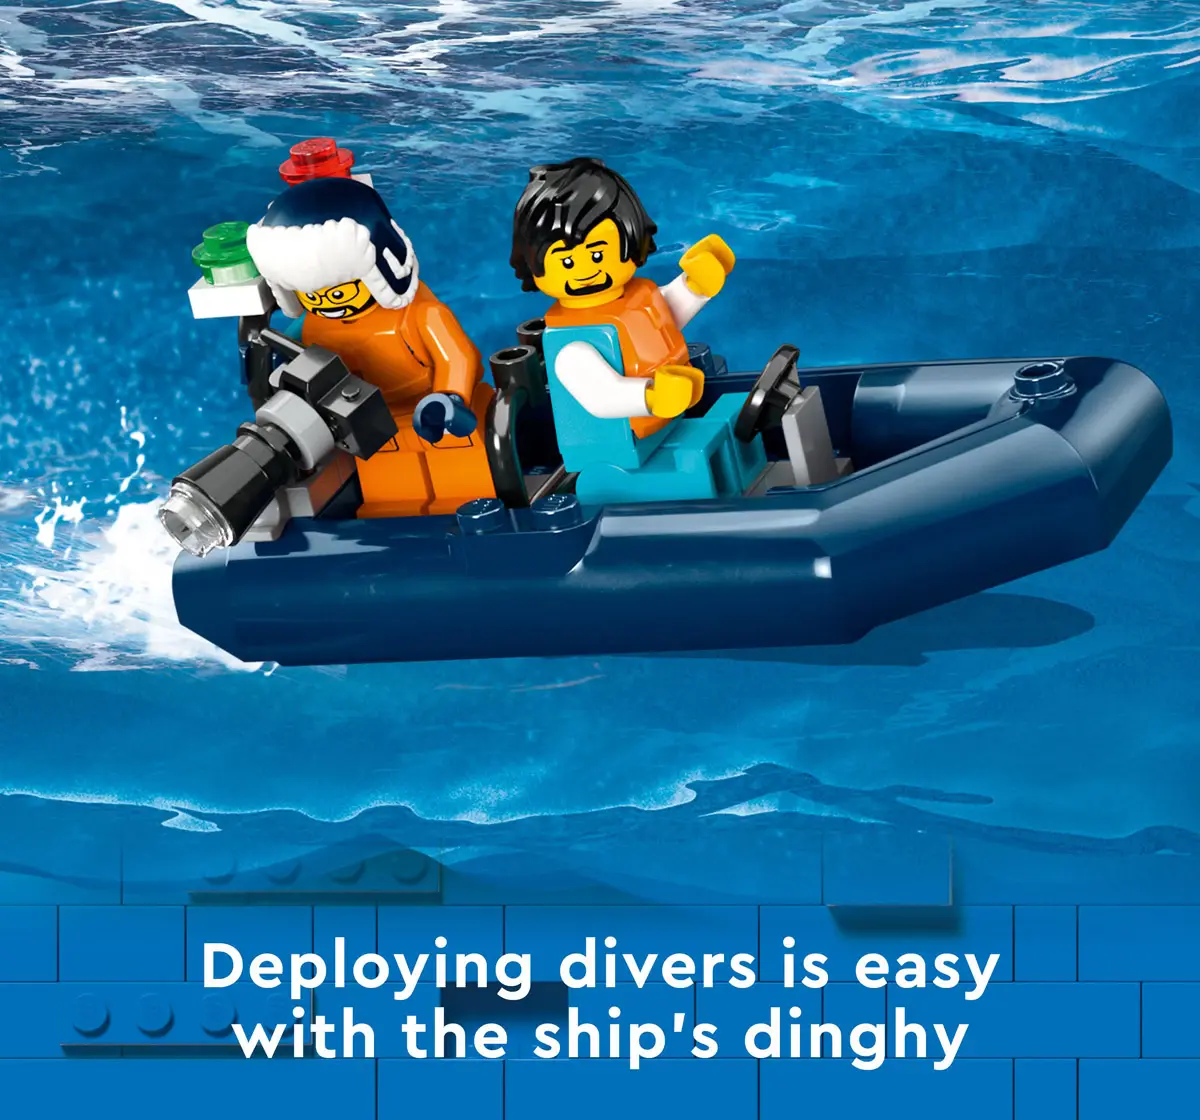 Lego City Arctic Explorer Ship 60368 Building Toy Set Multicolour For Kids Ages 7Y+ (815 Pieces)